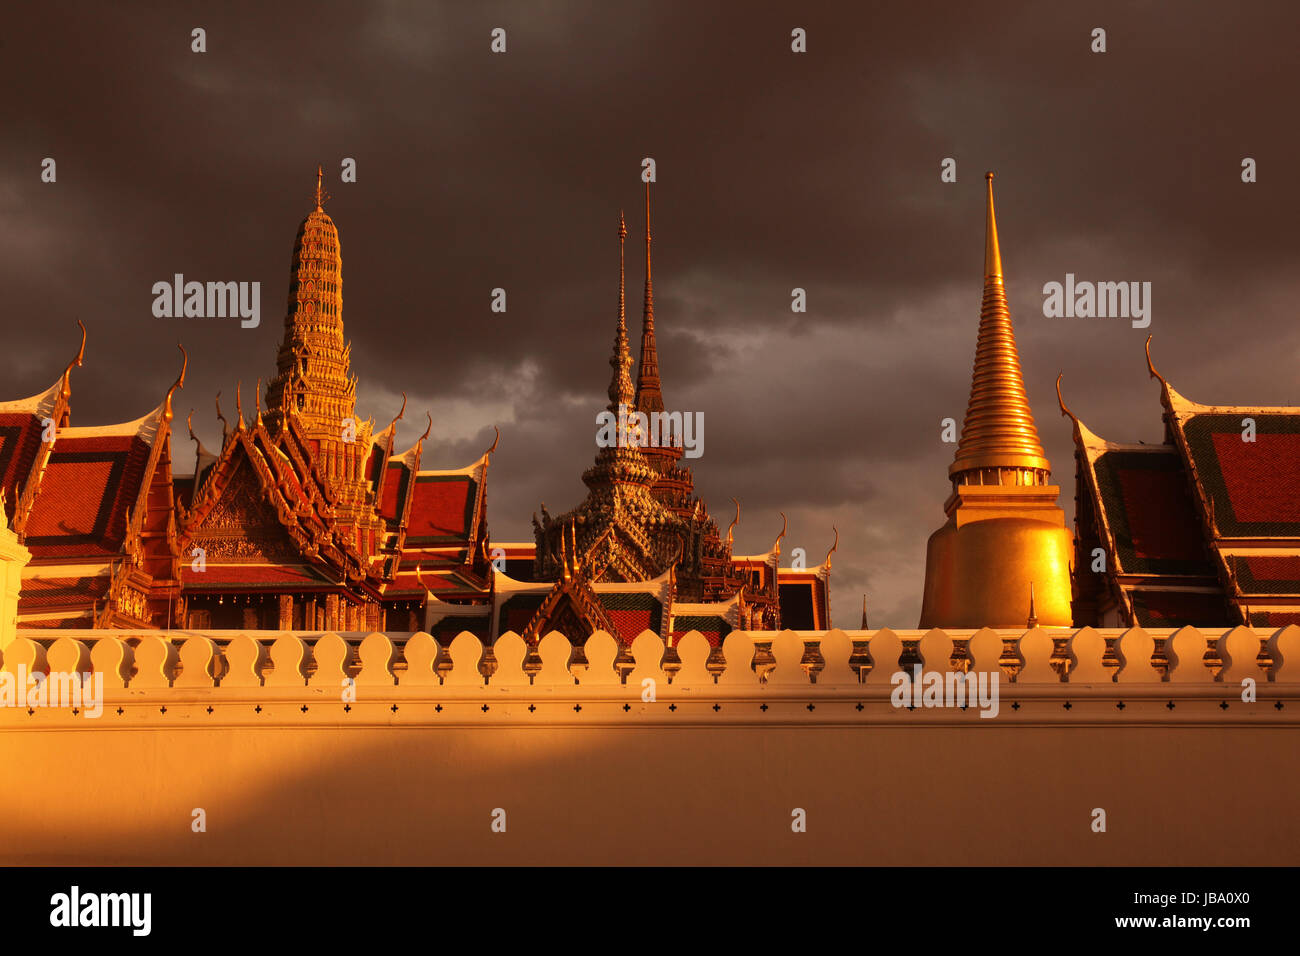 Dans Tempelgelaende das der Abendstimmung mit dem Wat Phra Keo beim Koenigspalast im Historischen Zentrum der Hauptstadt Bangkok en Thaïlande. Banque D'Images